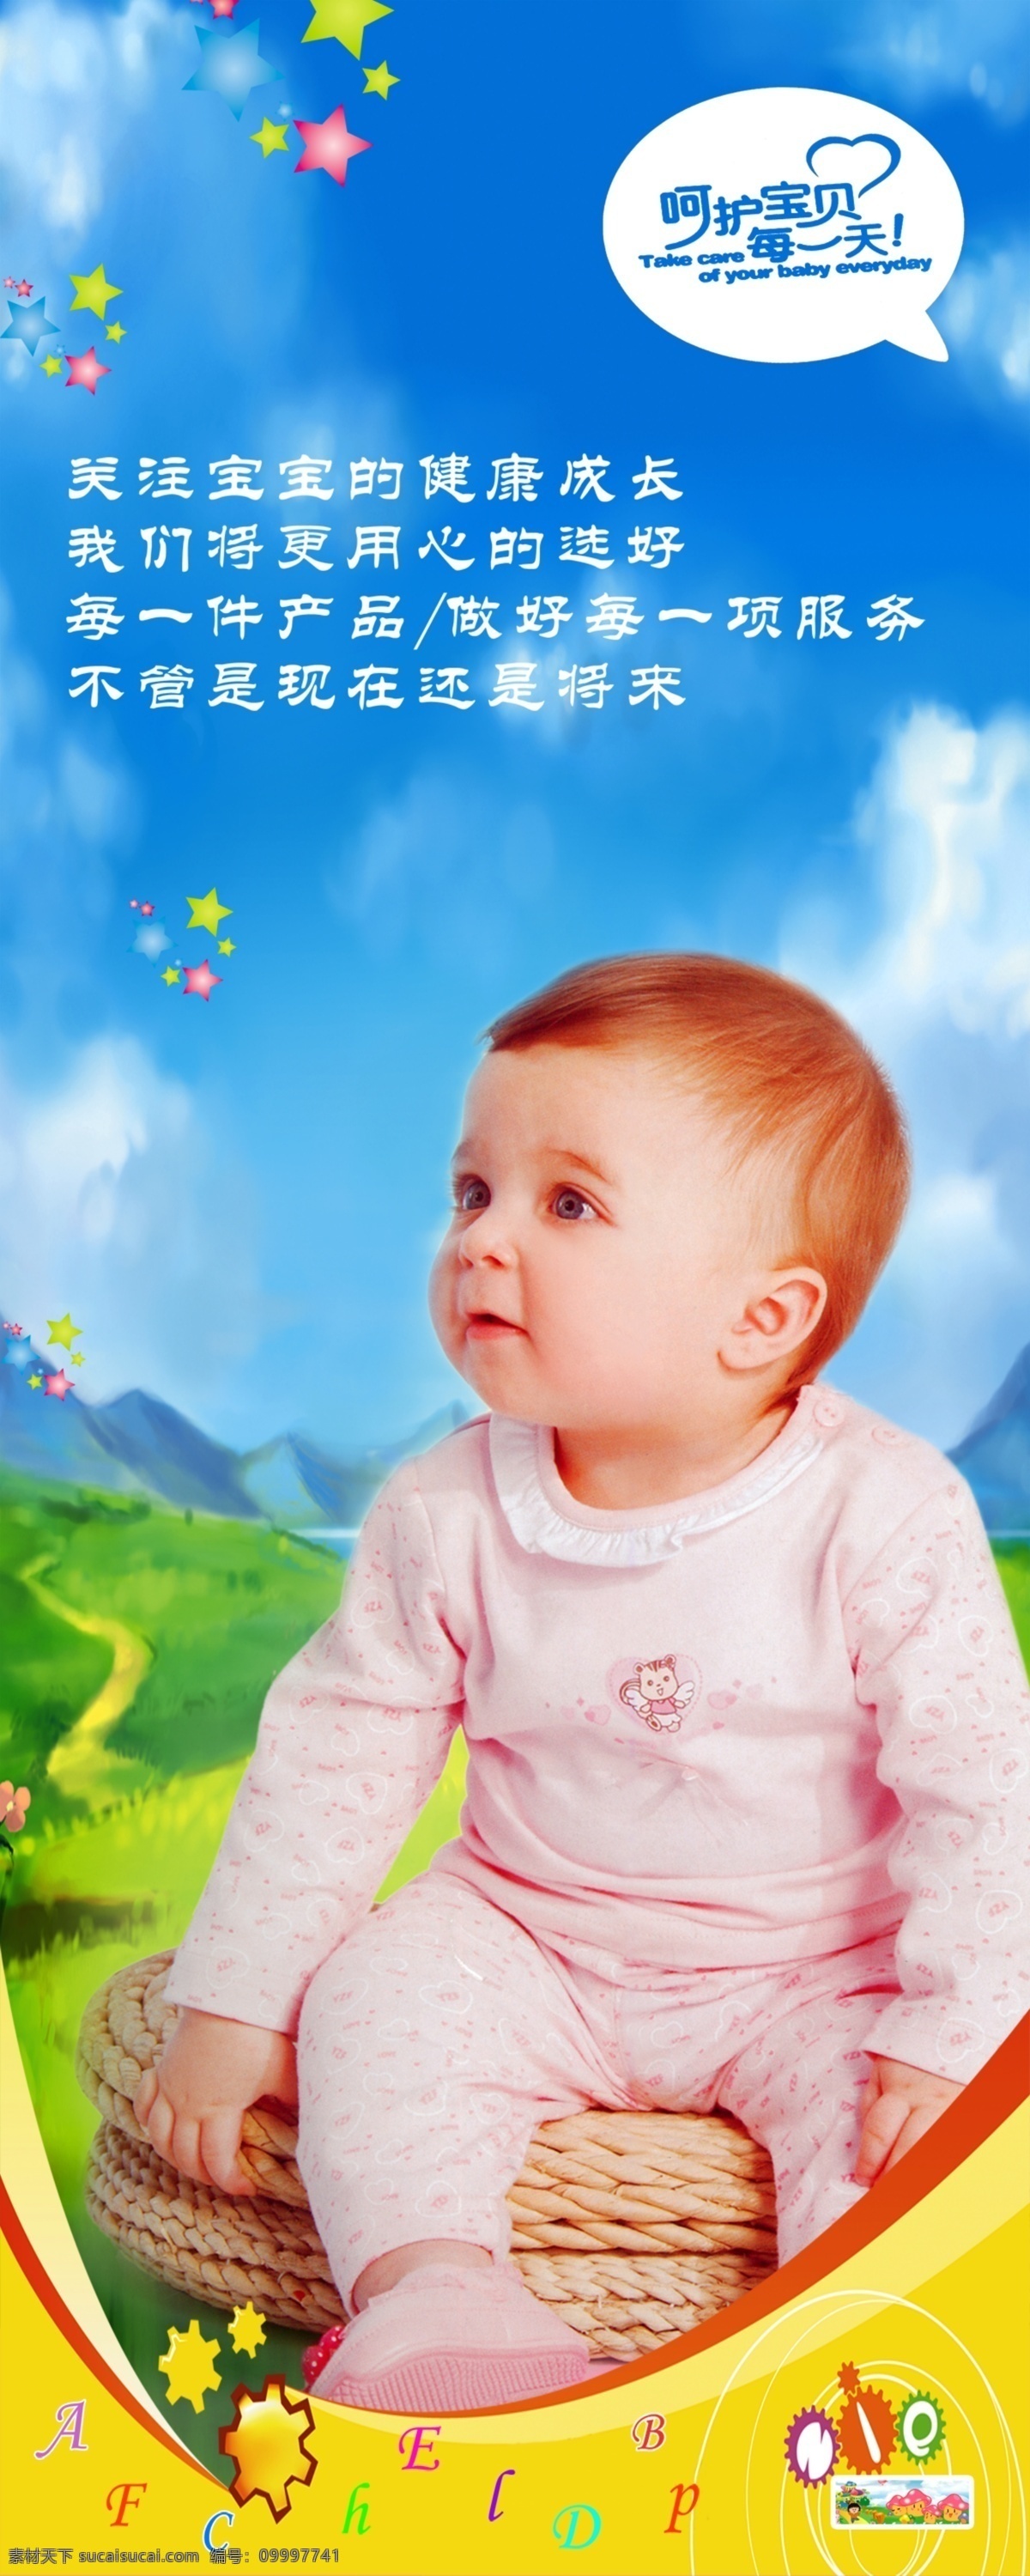 婴儿 模版 分层 蓝天 绿草地 生活馆 童 易拉宝 英文字母 婴 婴儿模版 婴儿图片 孕 源文件 矢量图 艺术字